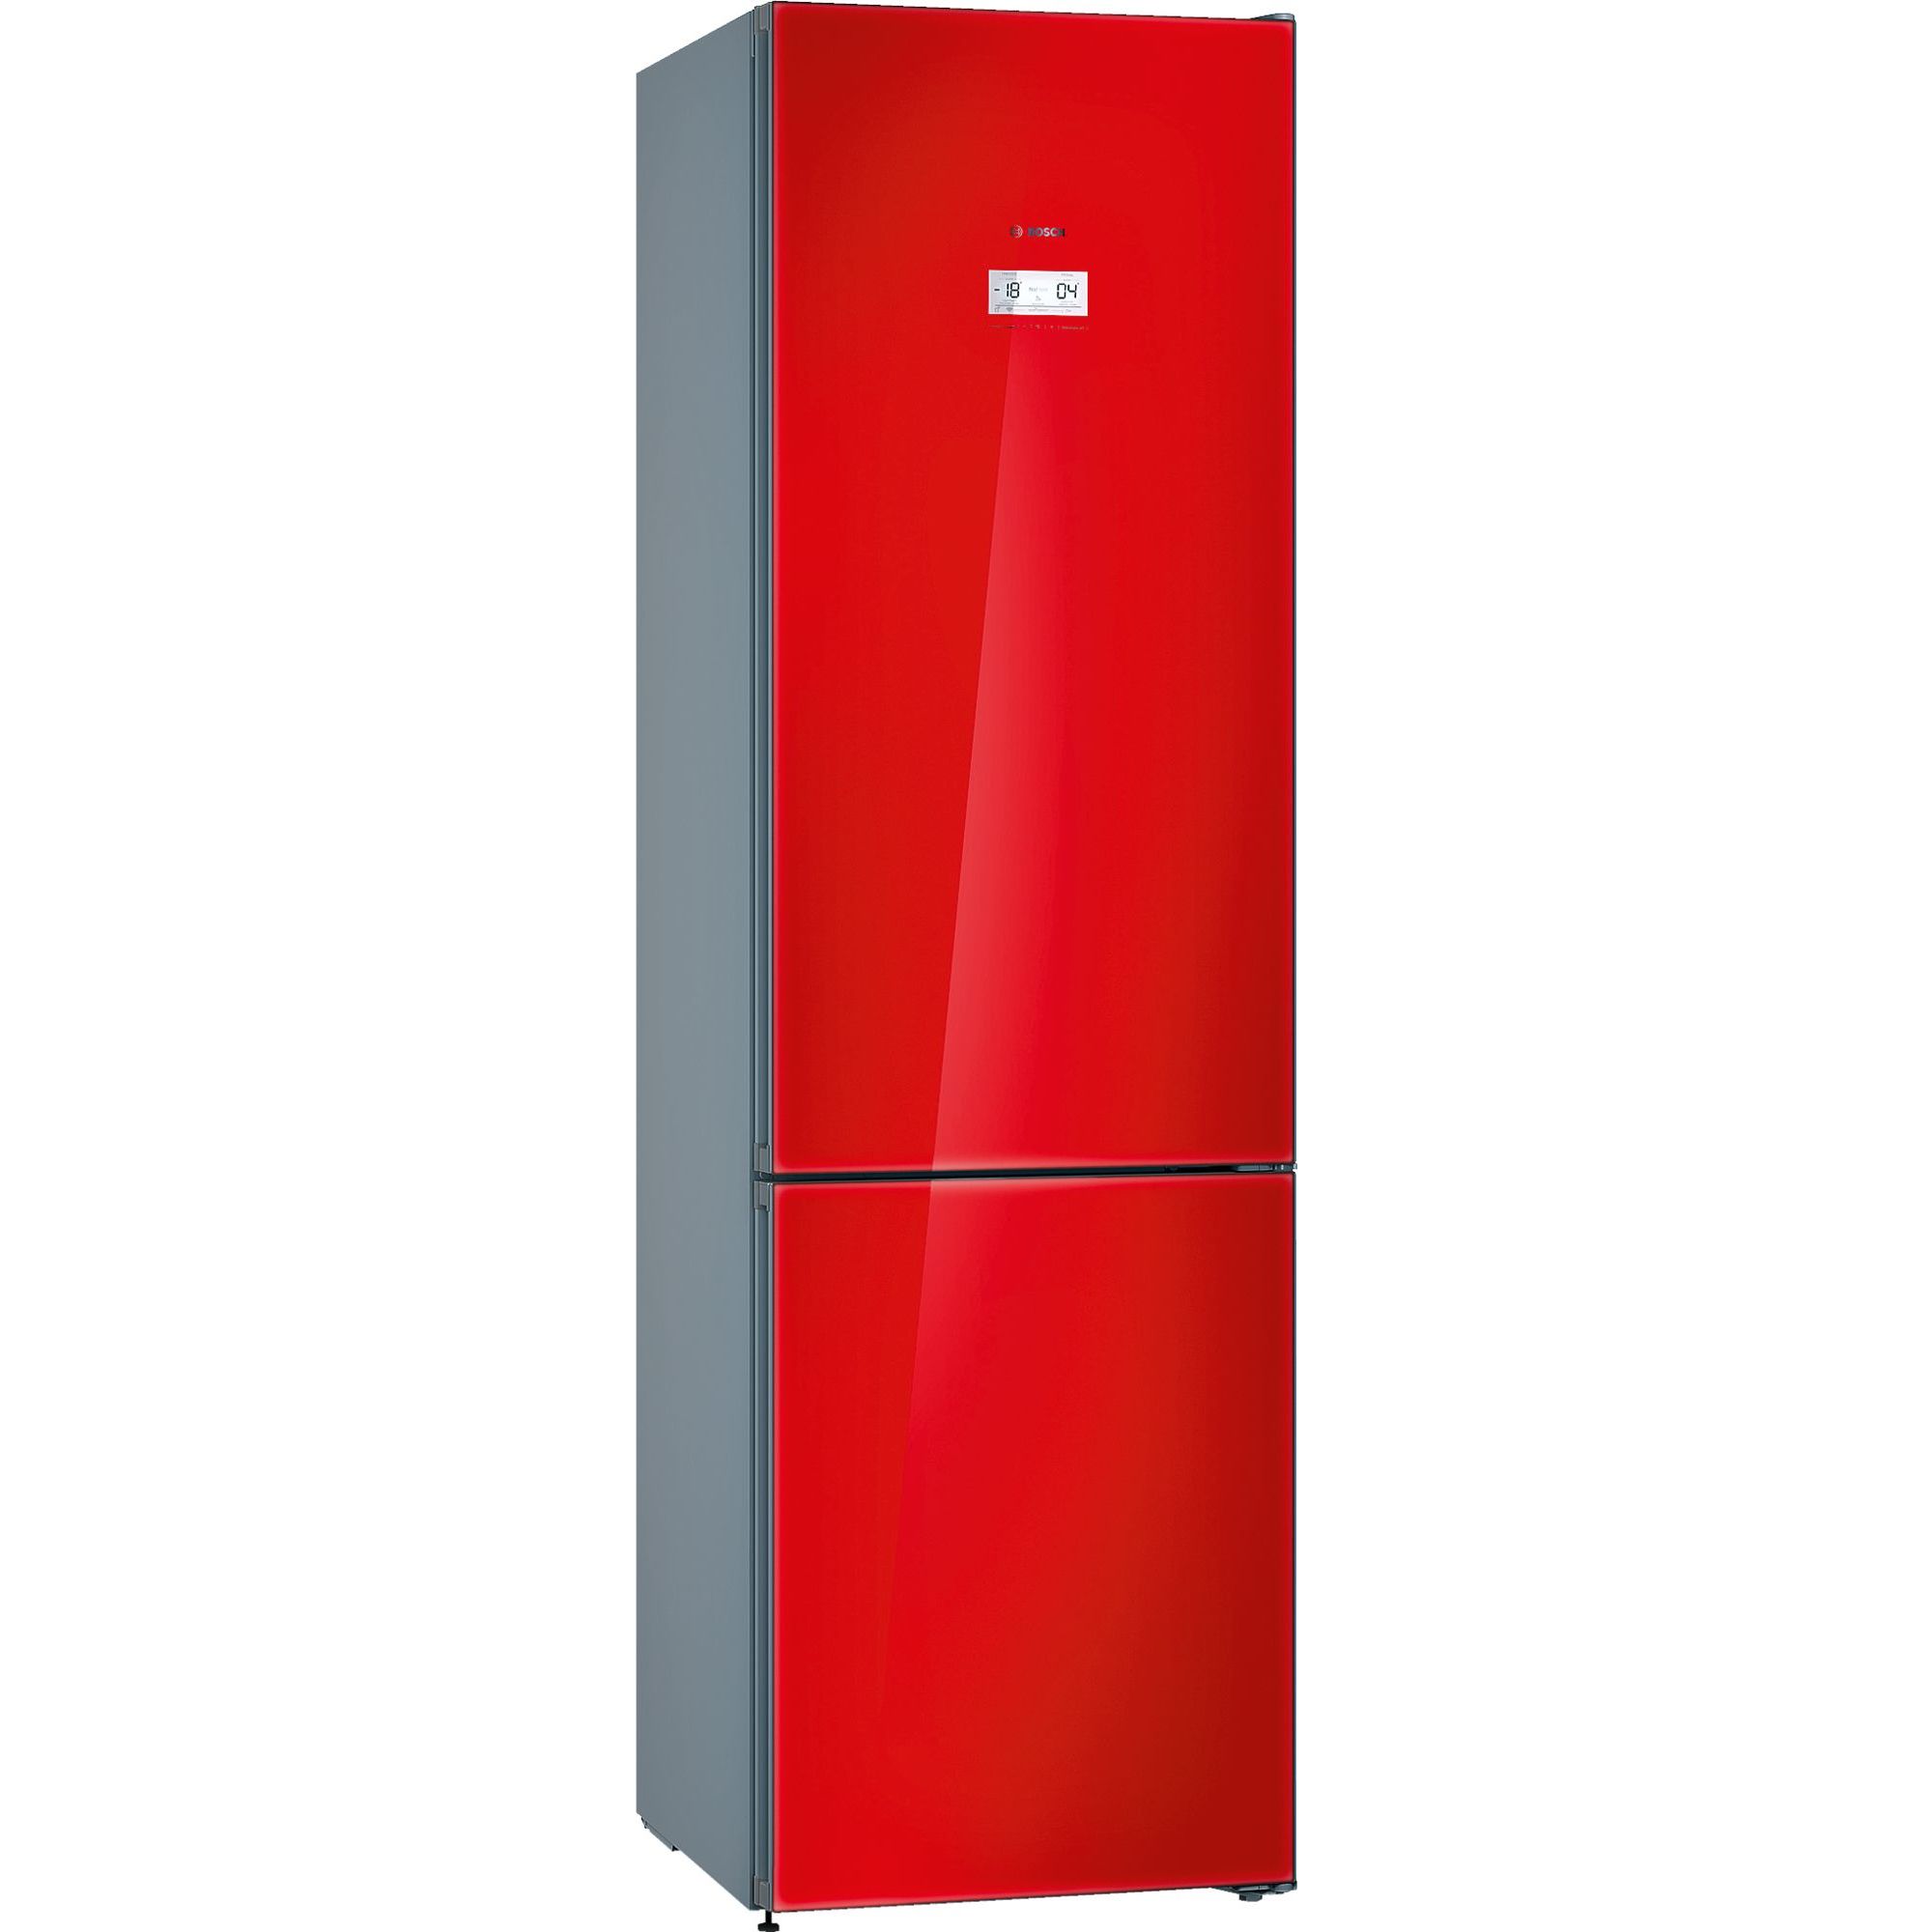 Холодильник магазин бытовой техники спб. Холодильник бош kgn36s52. Холодильник бош kgn39sq10r. Bosch kgn39lr3ar. Холодильник Bosch kgn39.